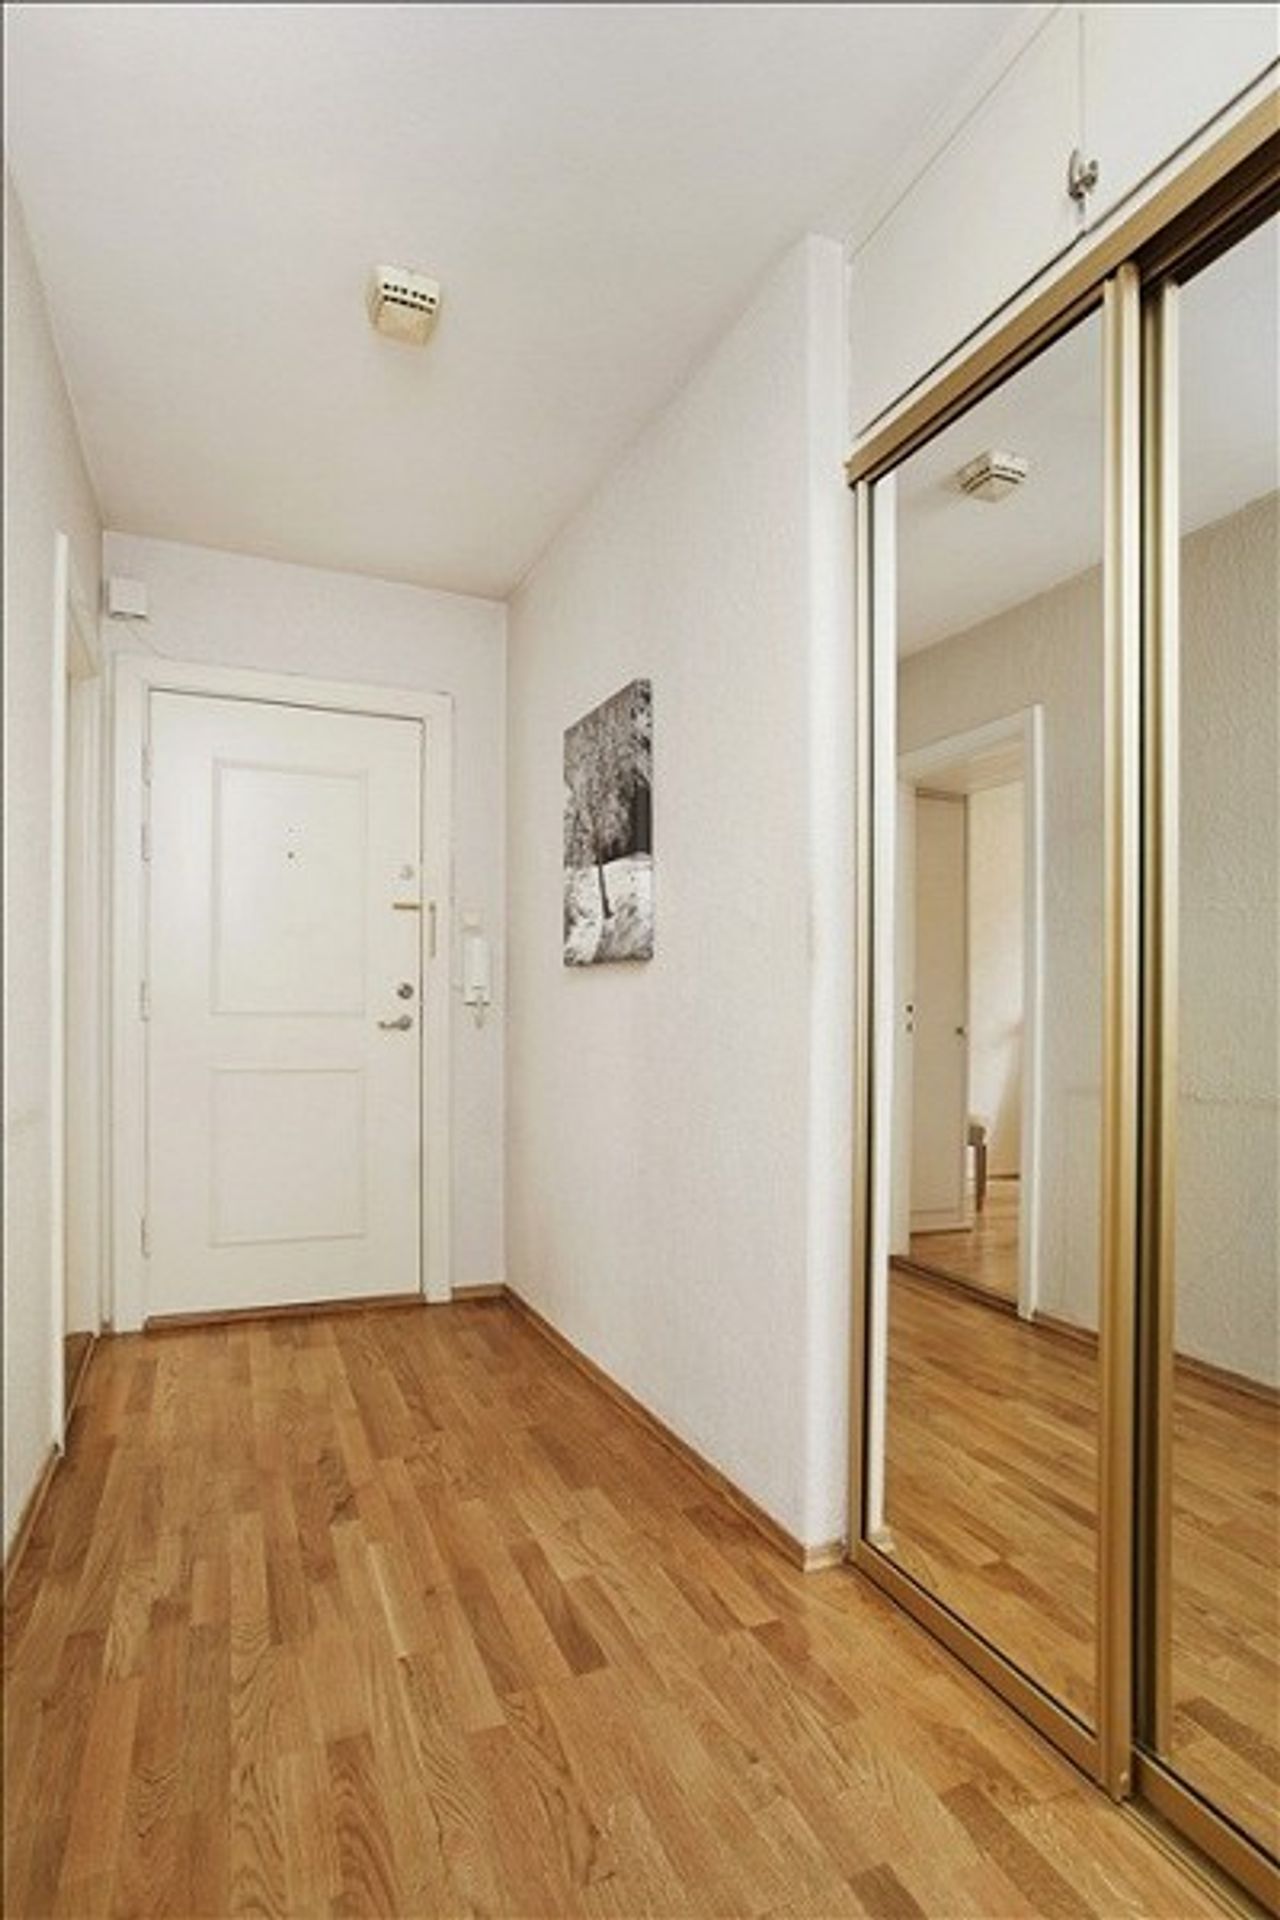 Byt, kde Breivik osnoval útoky, je na prodej - 8 - GALERIE: Prodává se byt, ve kterém Breivik zosnoval krvavé útoky (8/18)